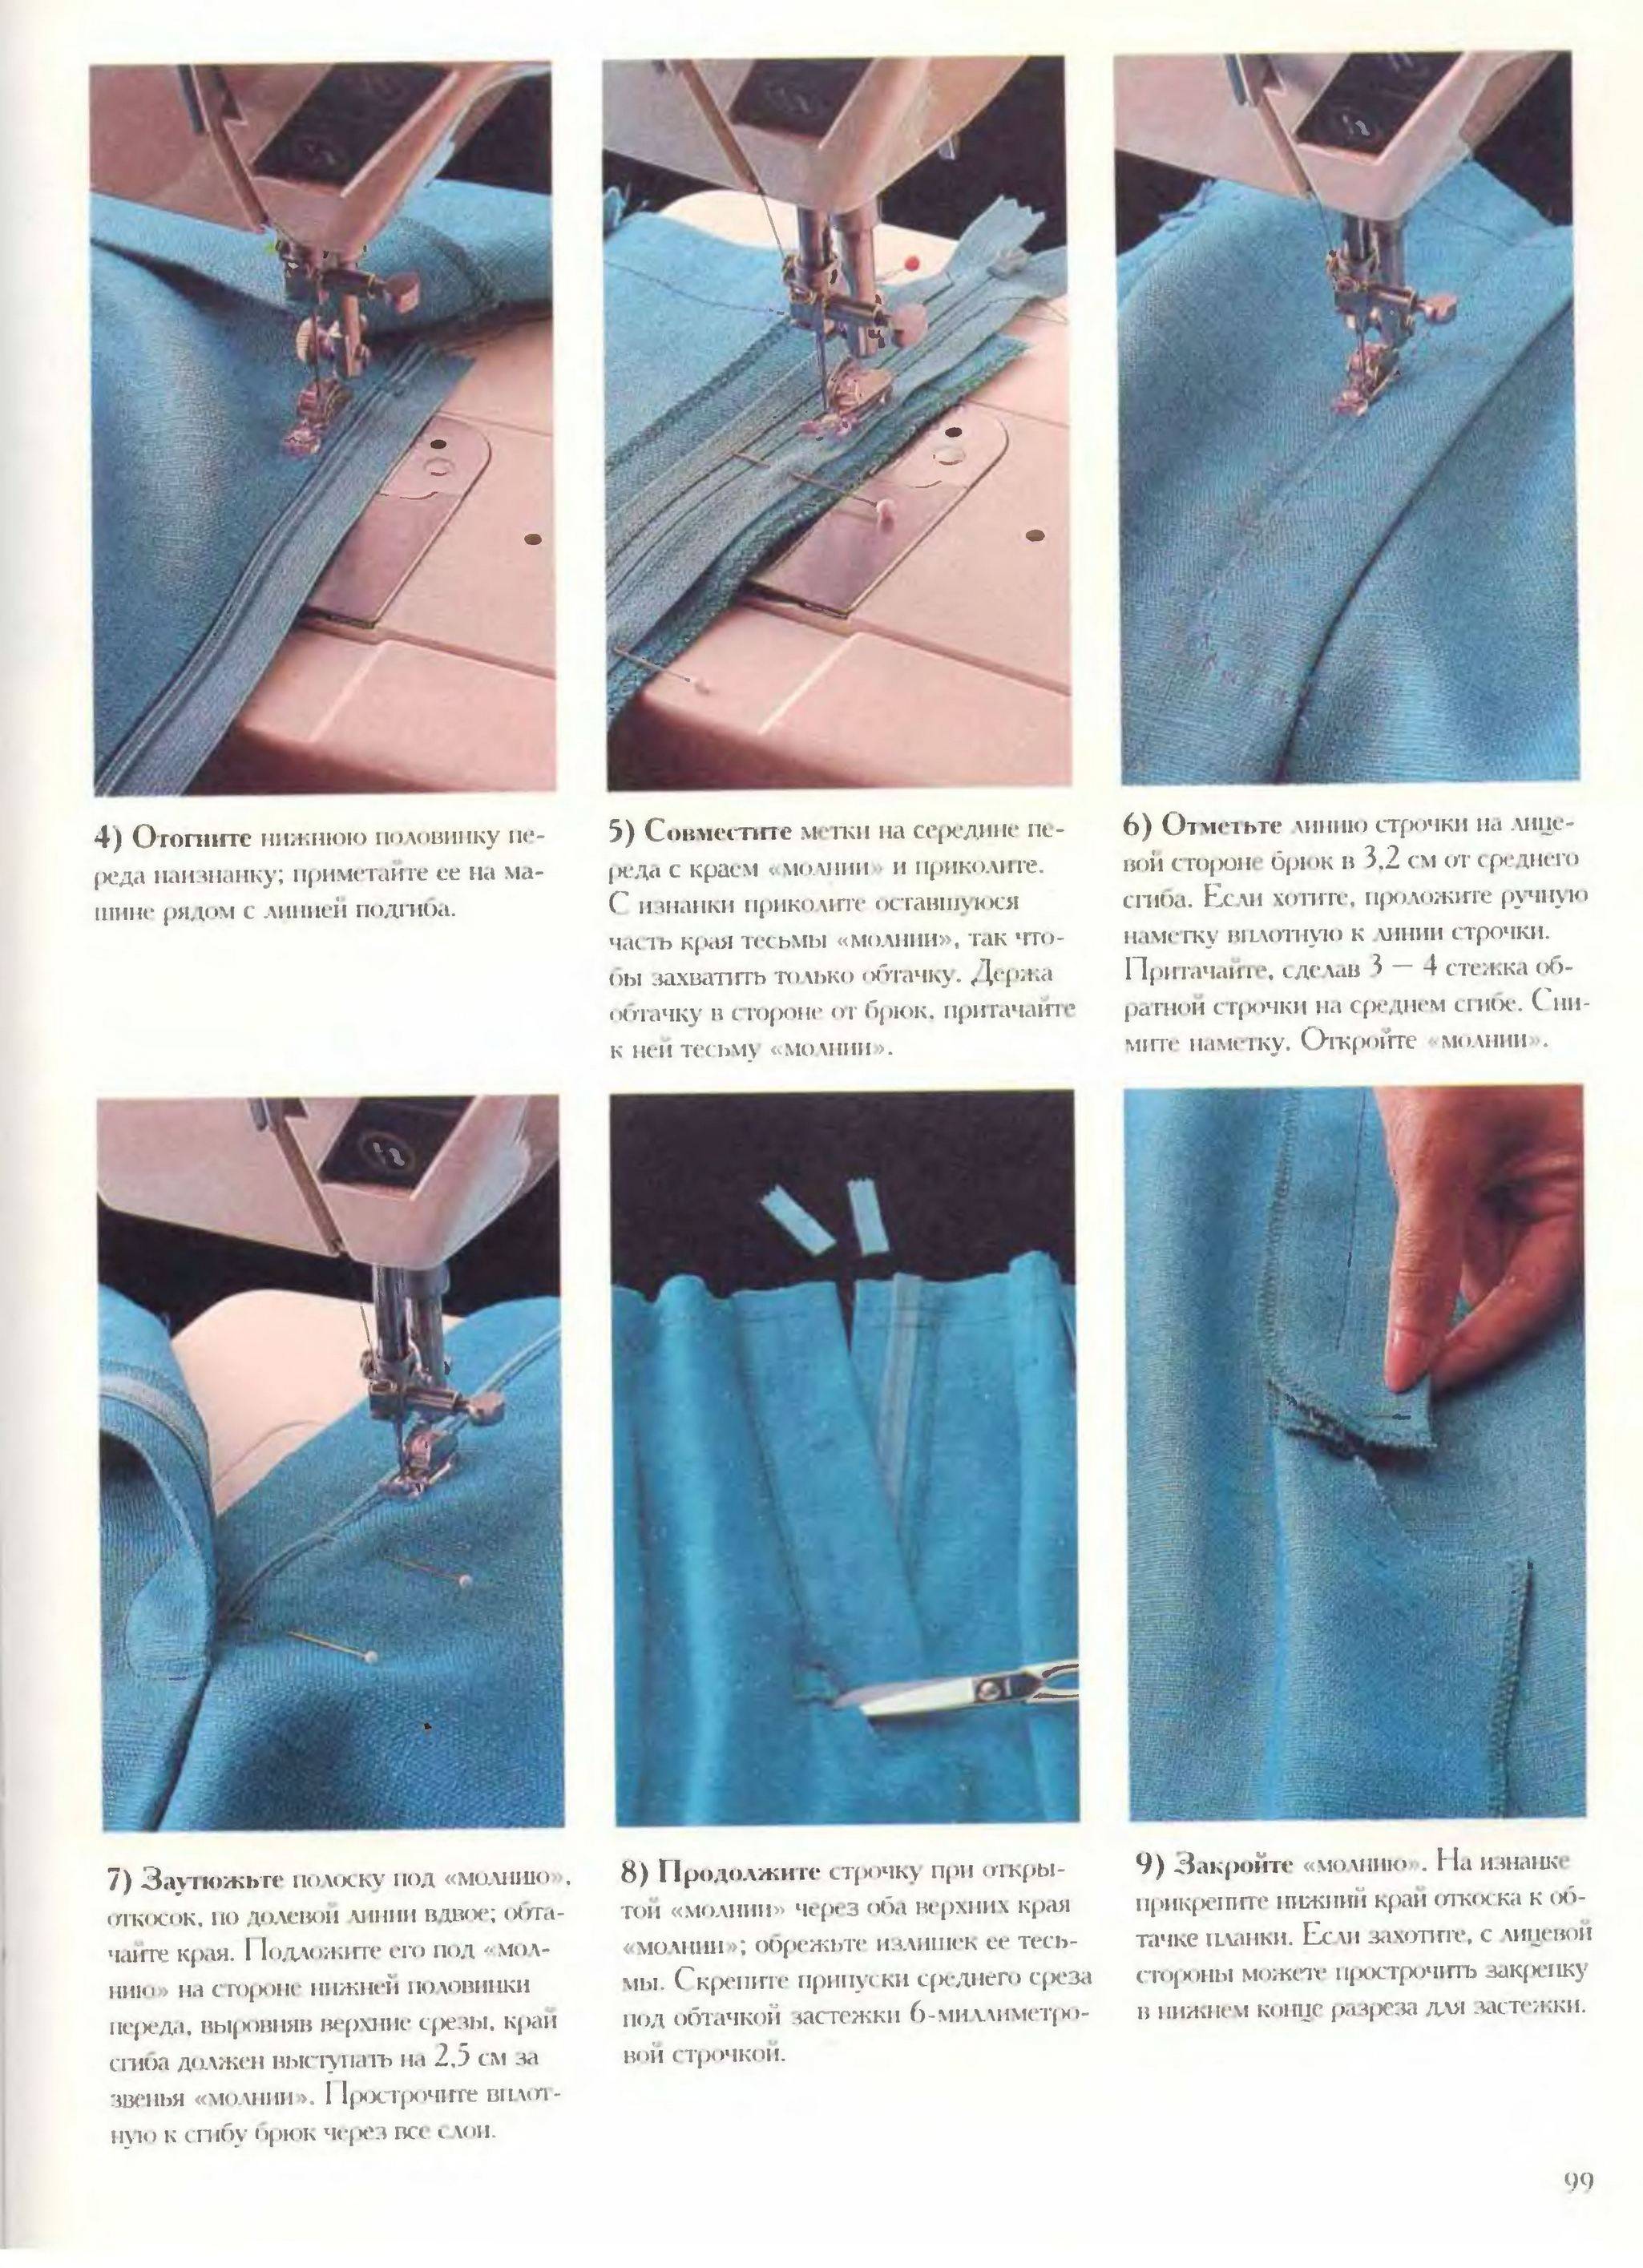 Как сделать штаны? 7 пошаговых мастер-классов, как сшить брюки своими руками + готовые выкройки штанов - courseburg